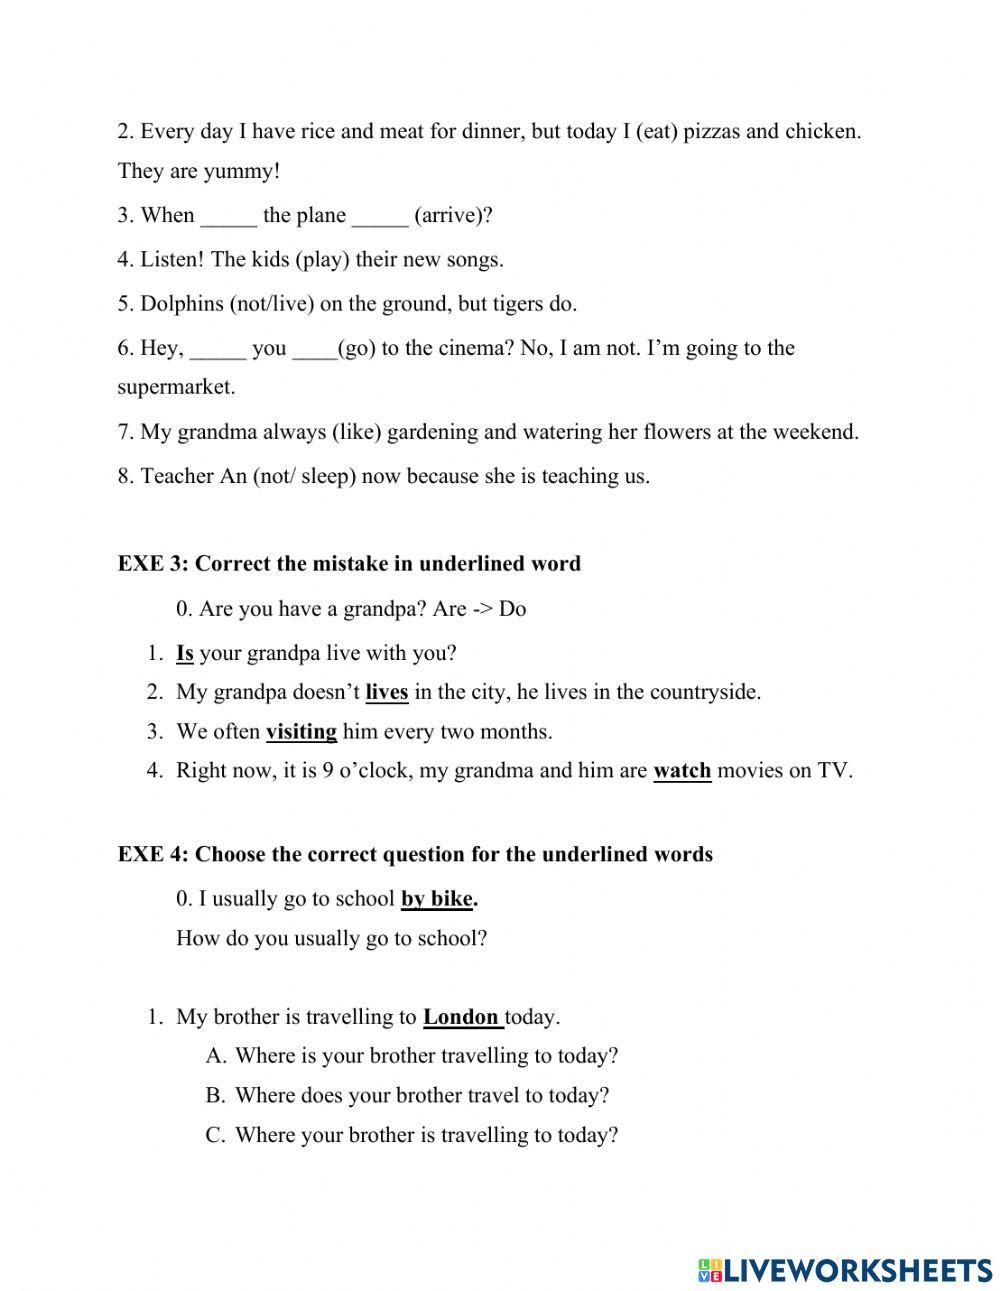 S1g1 grammar test